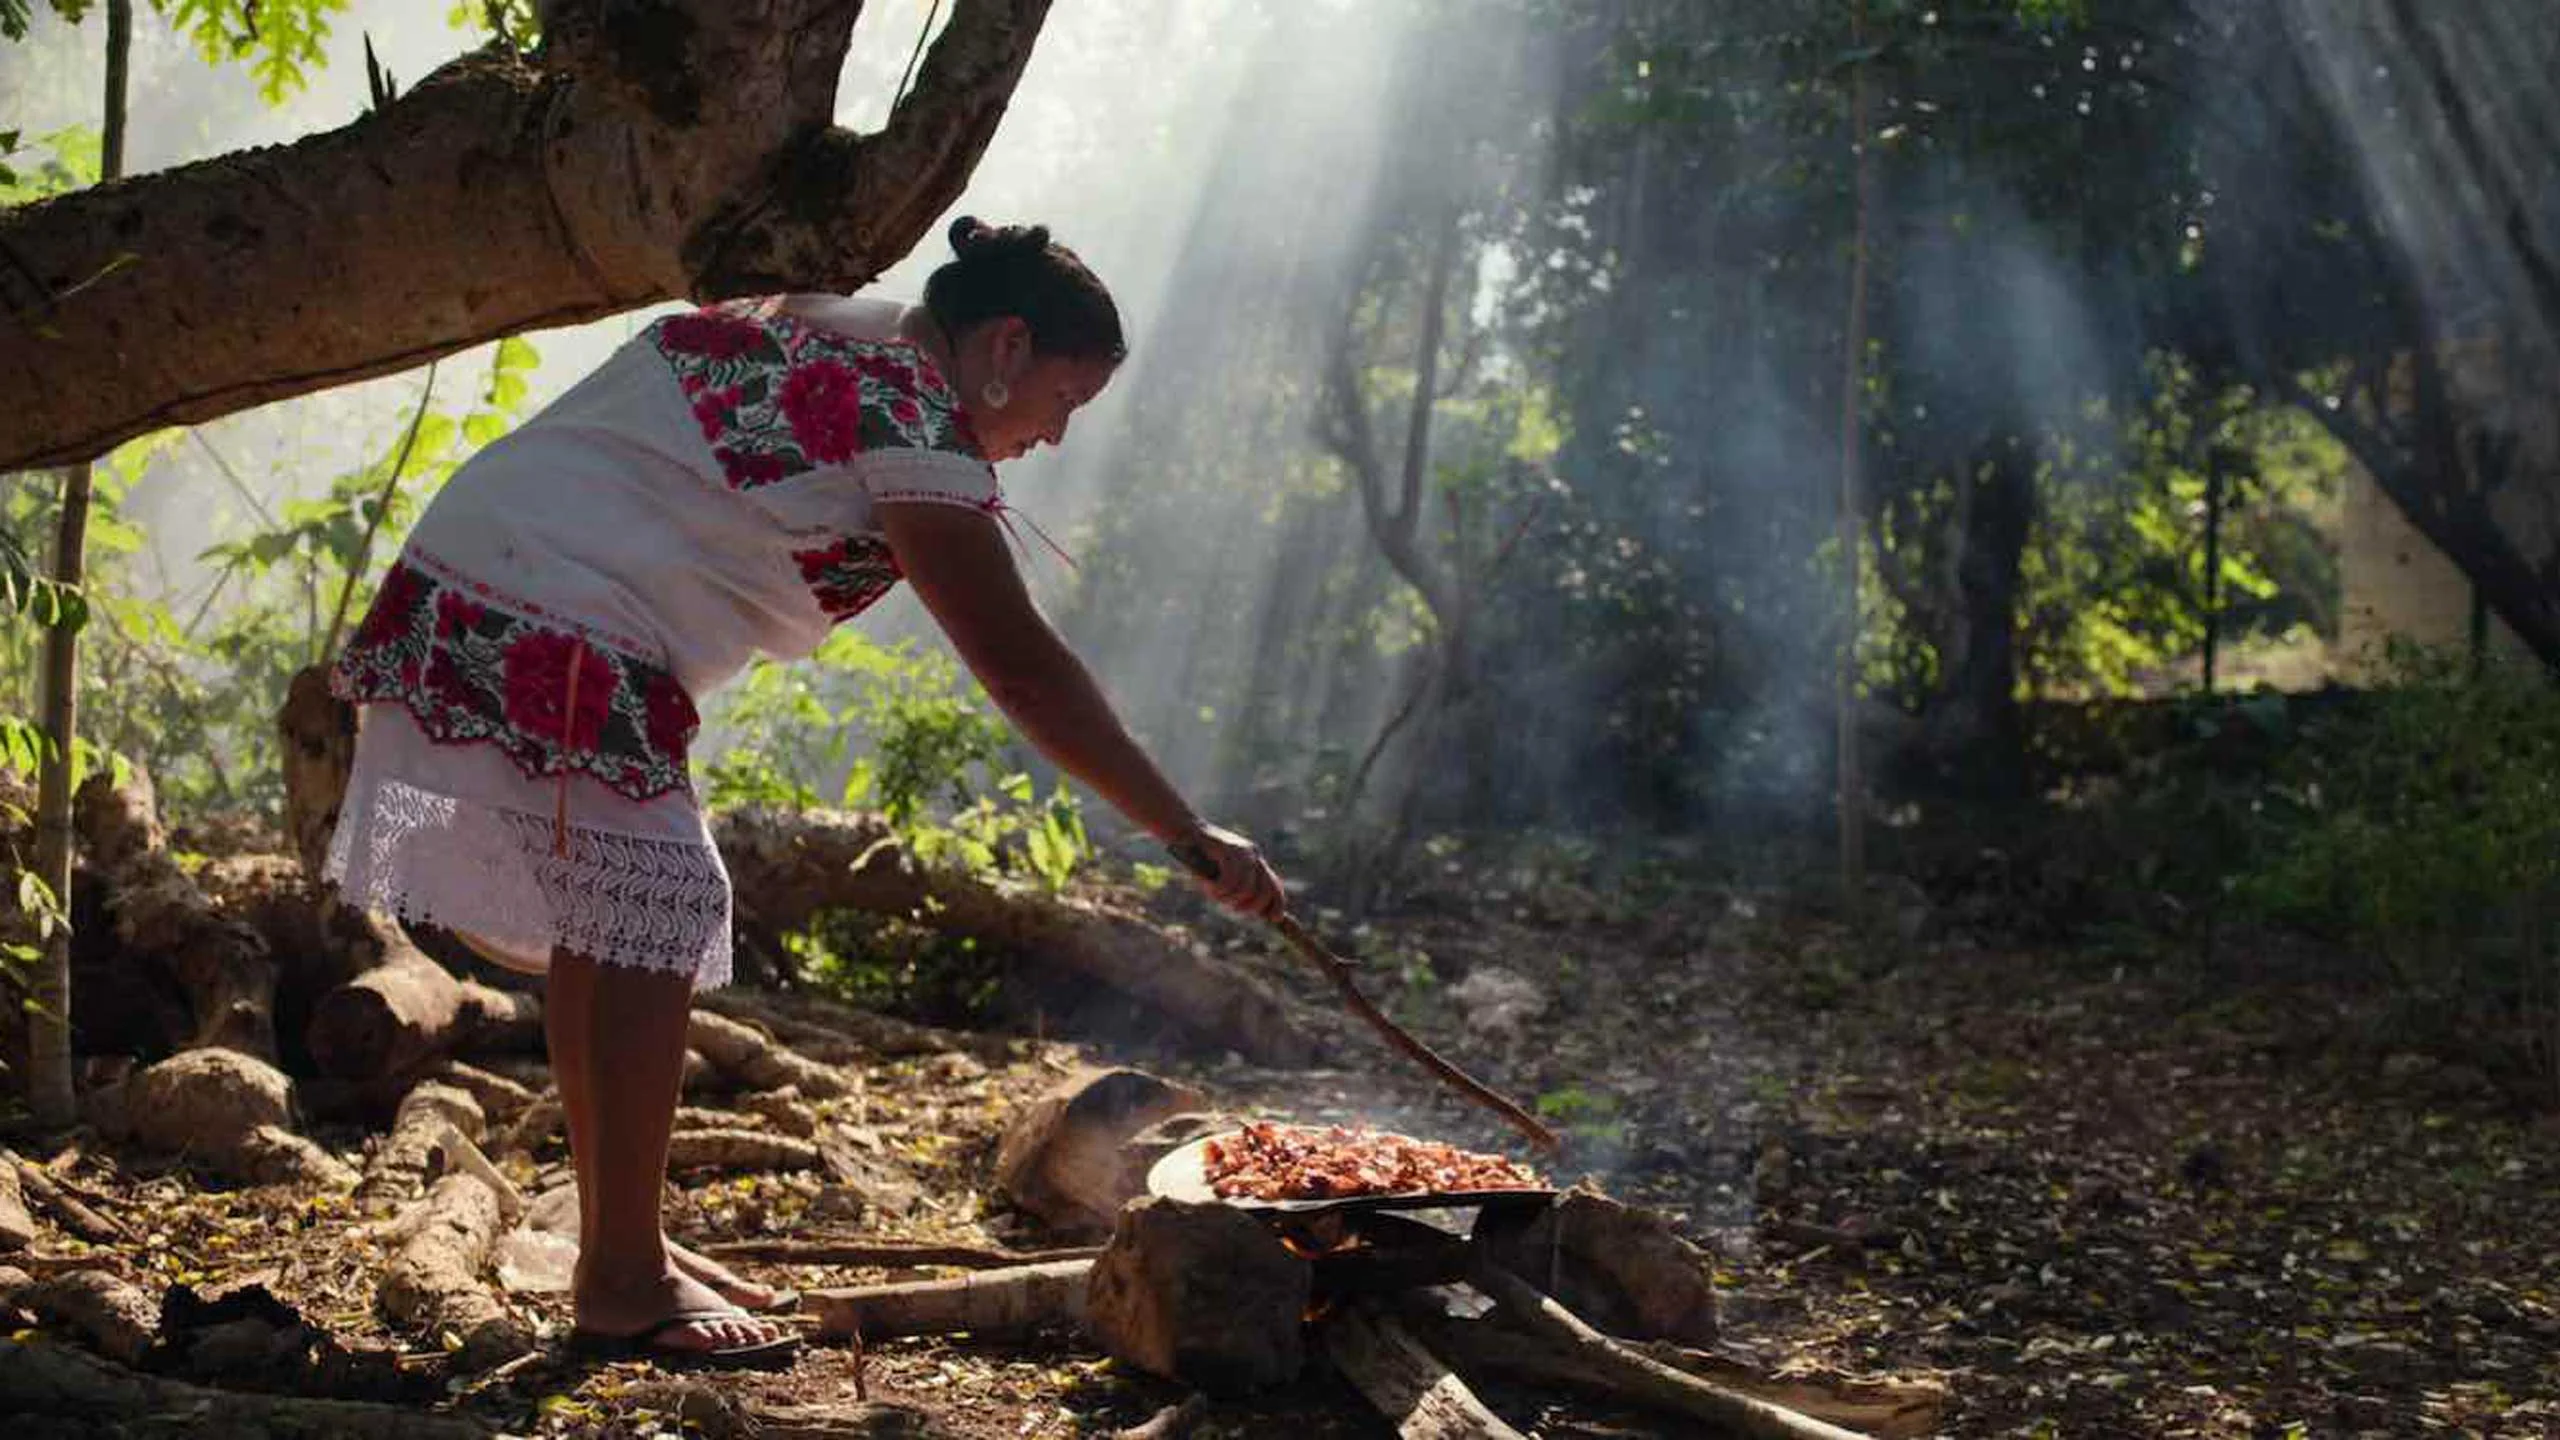 Cocina yucateca protagoniza episodio de “Chef’s table: BBQ” en Netflix